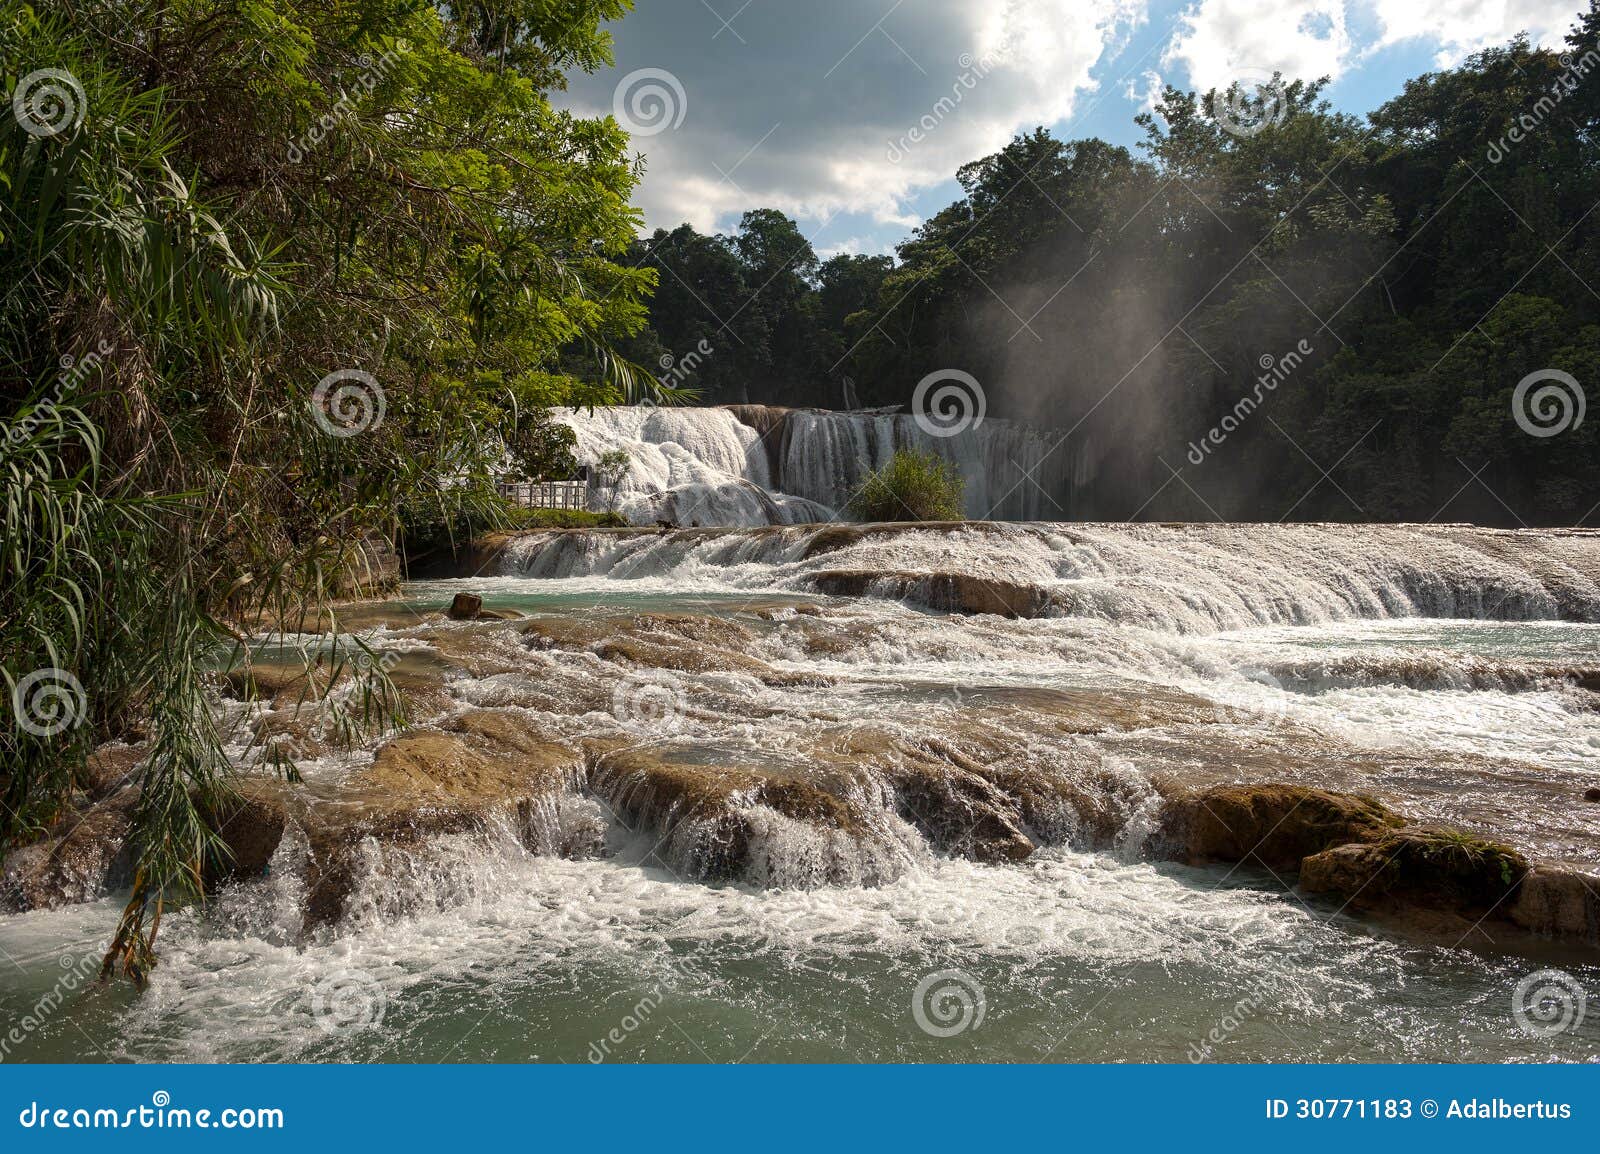 agua azul waterfalls in mexico